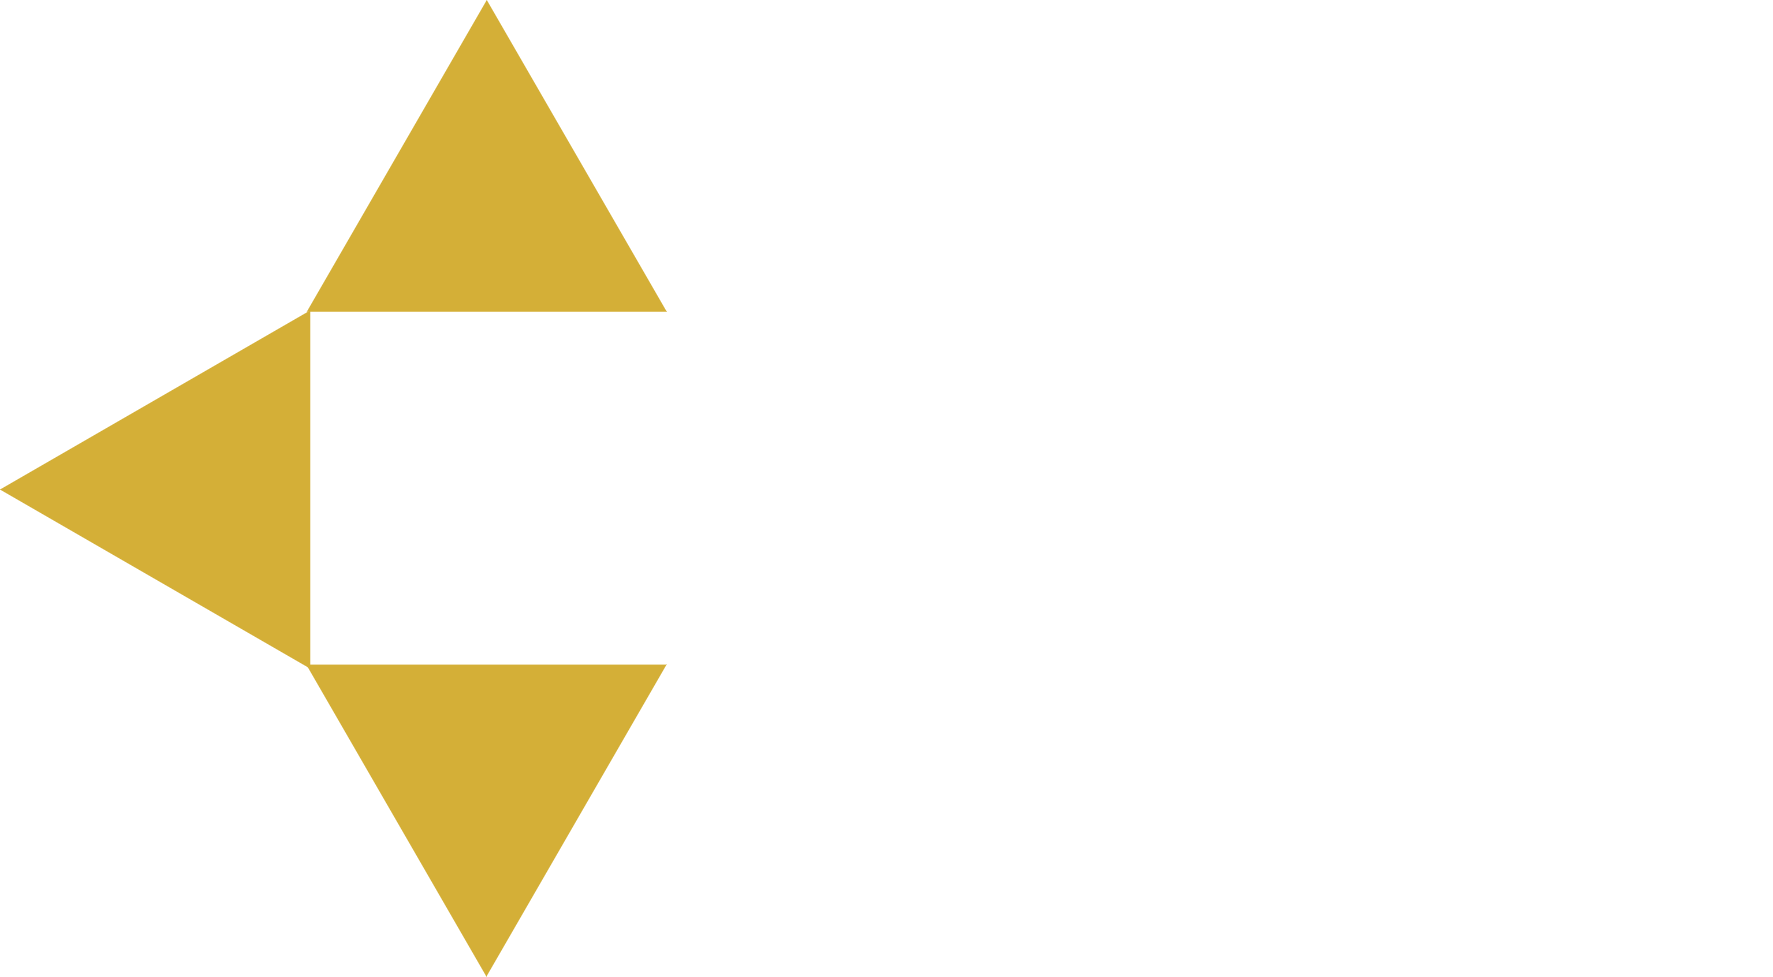 Repria Multimedia Corp